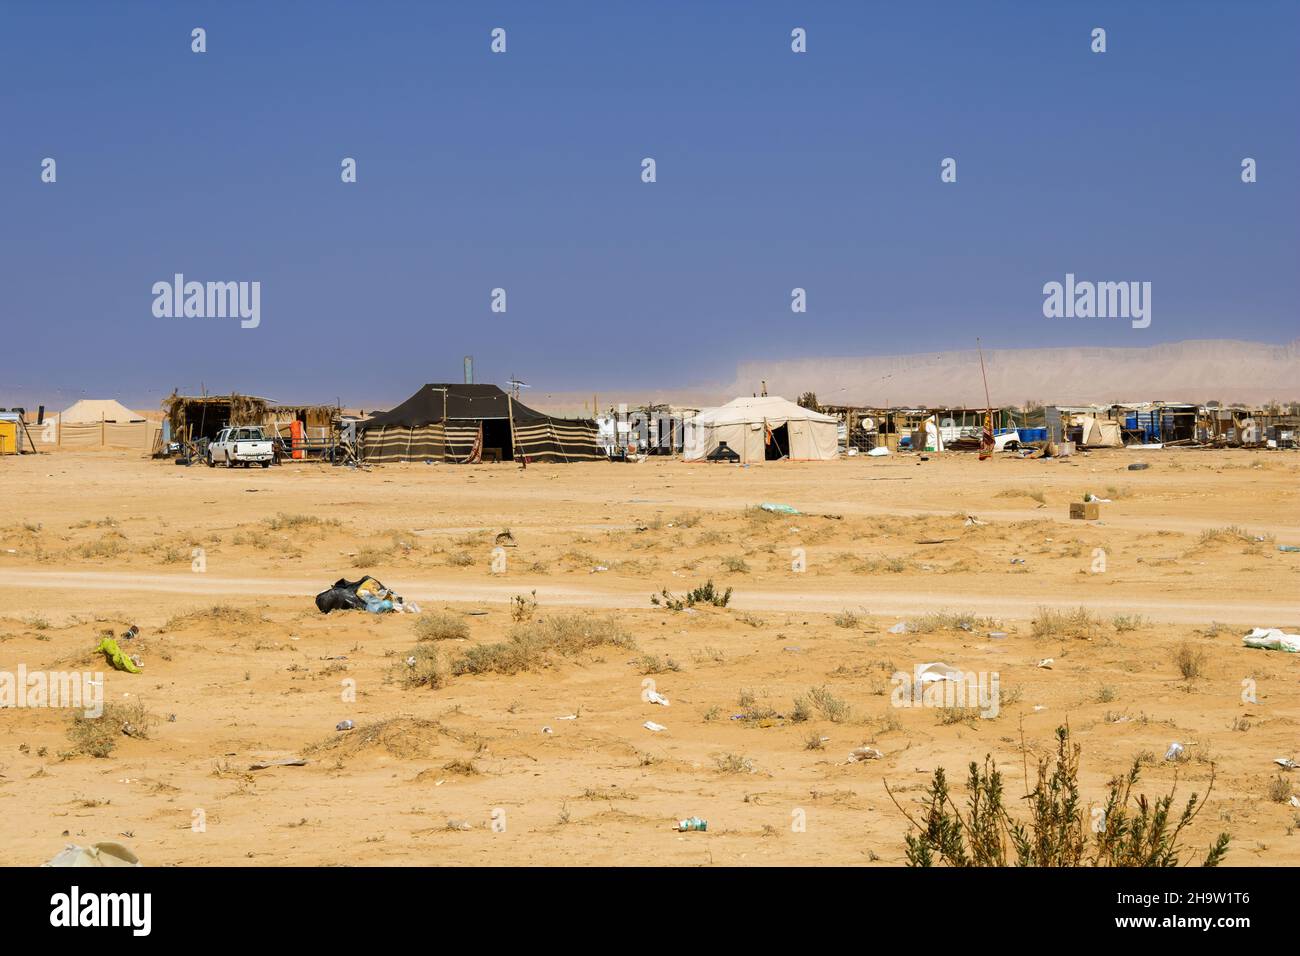 A typical Bedouin family camp in the desert near Riyadh, Saudi Arabia Stock Photo